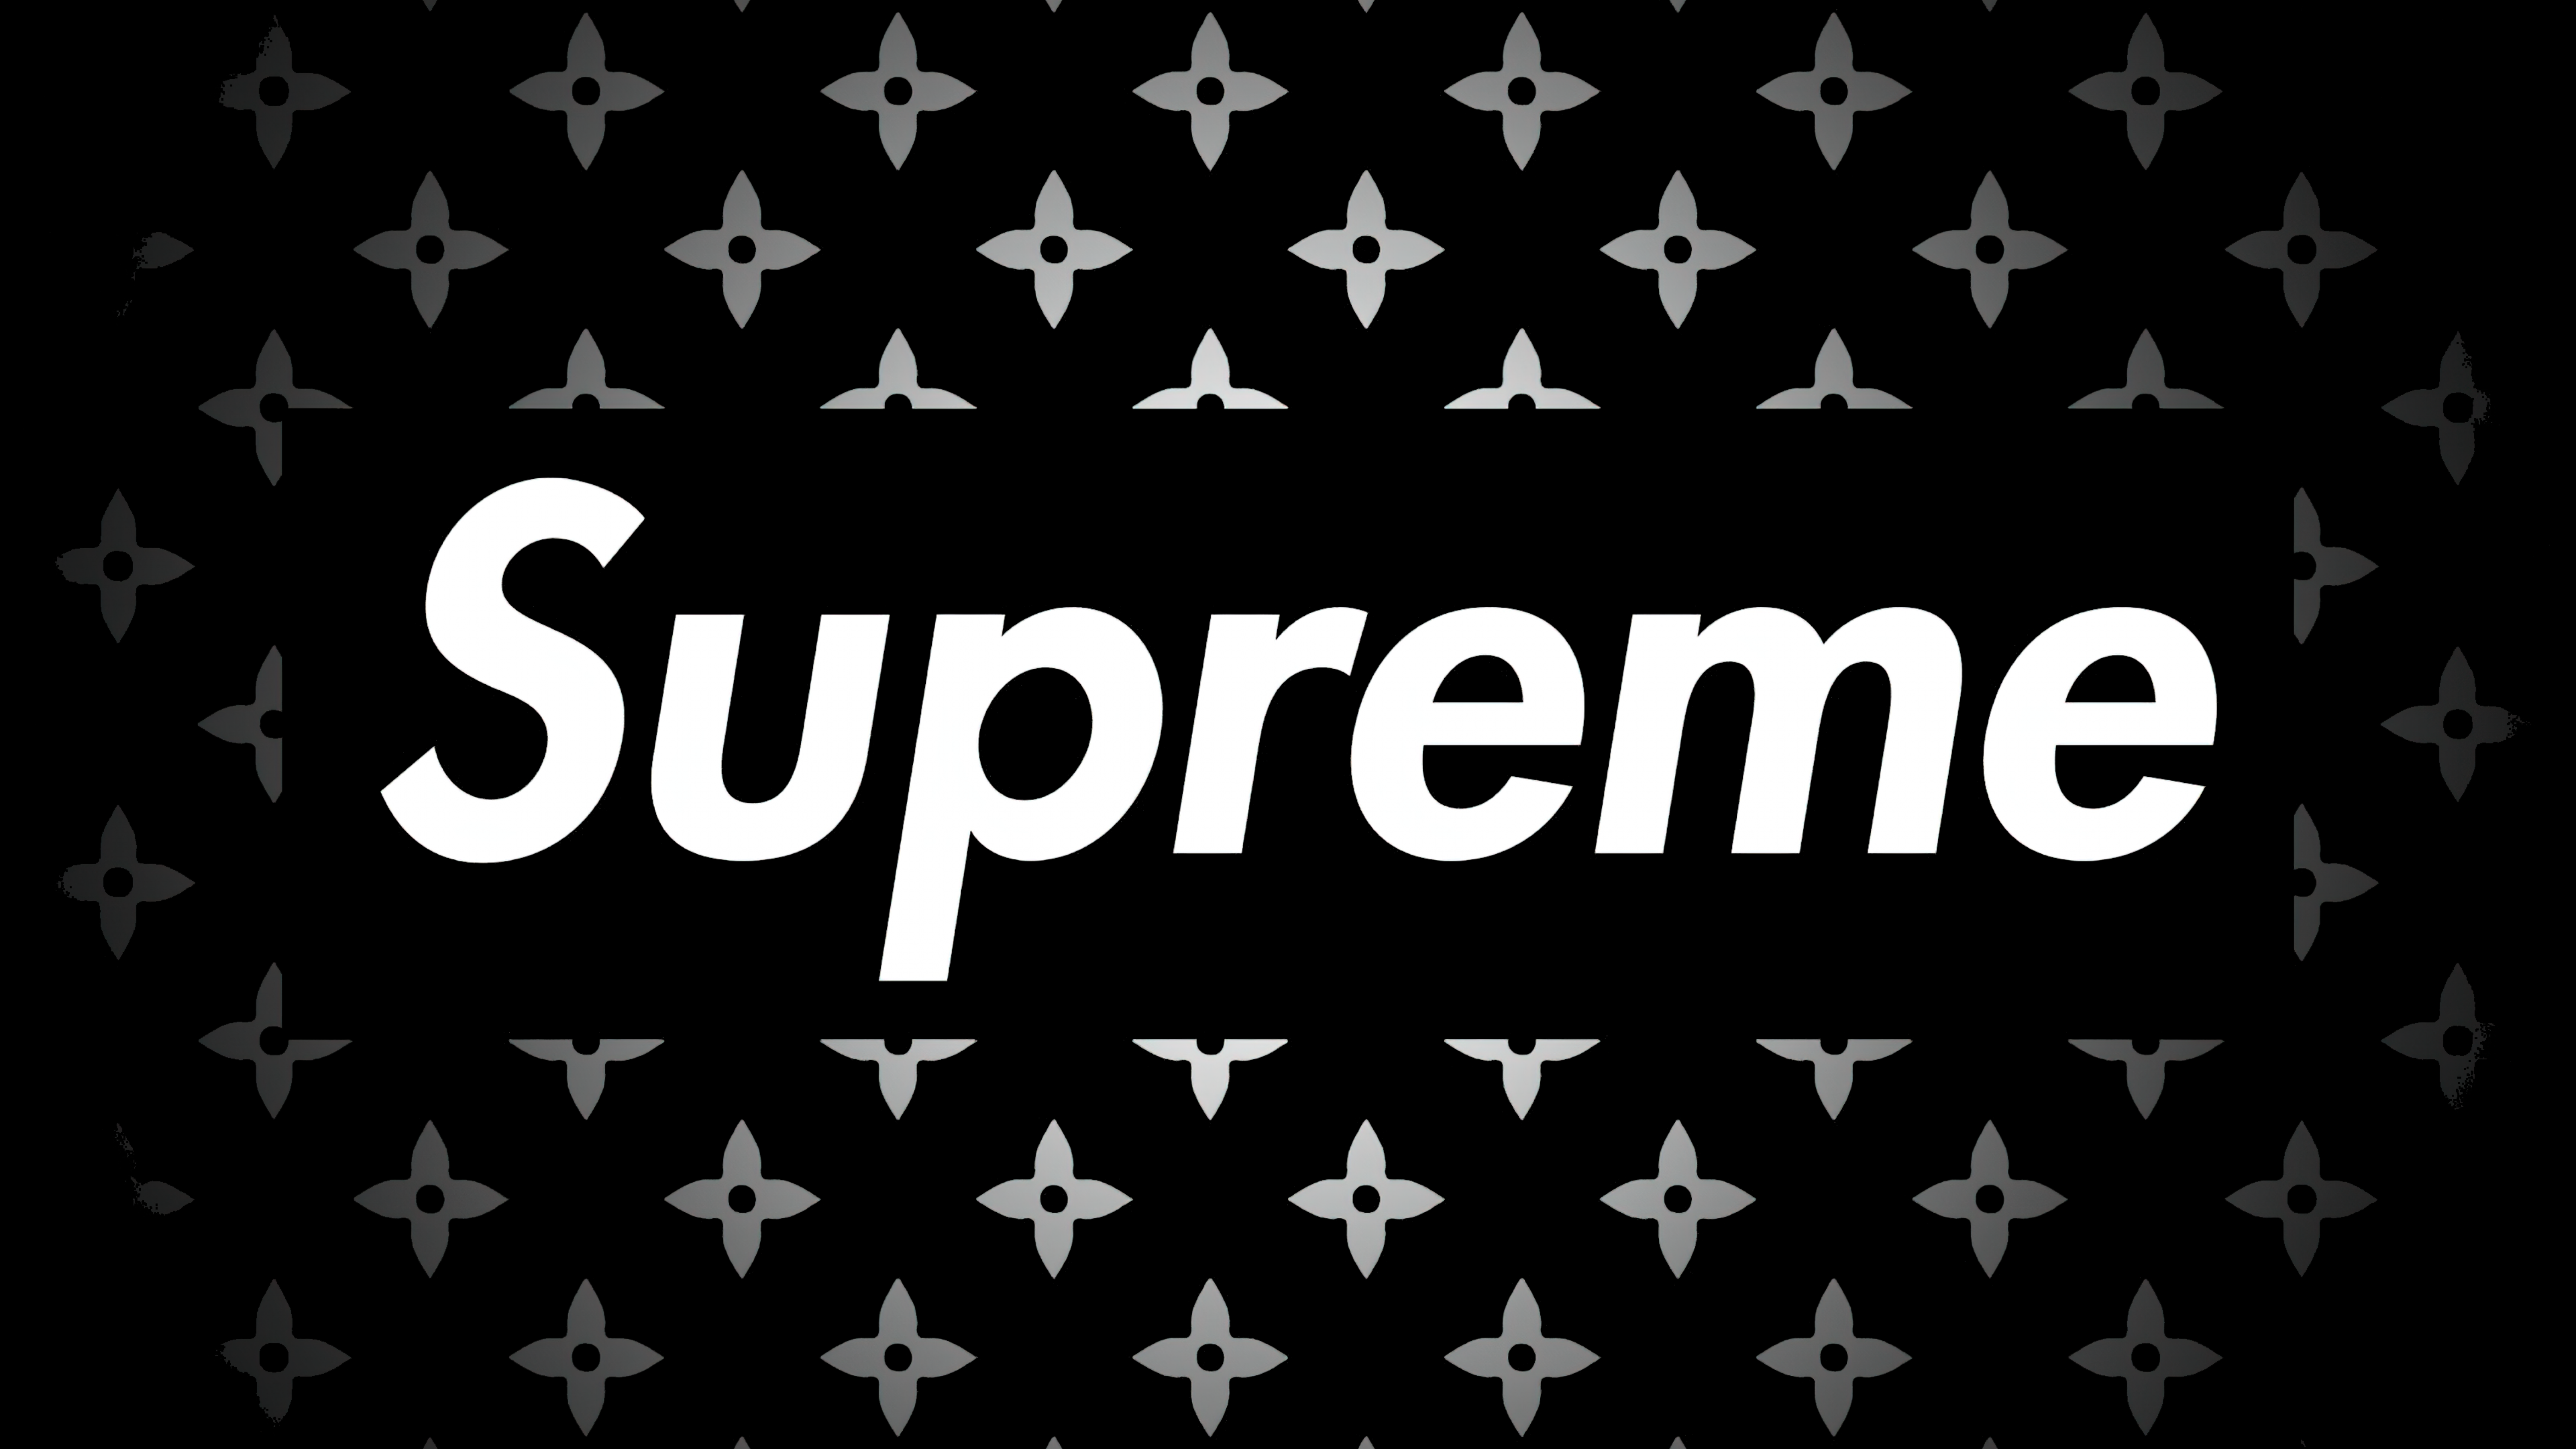 Black Supreme Logo PNG Image Background